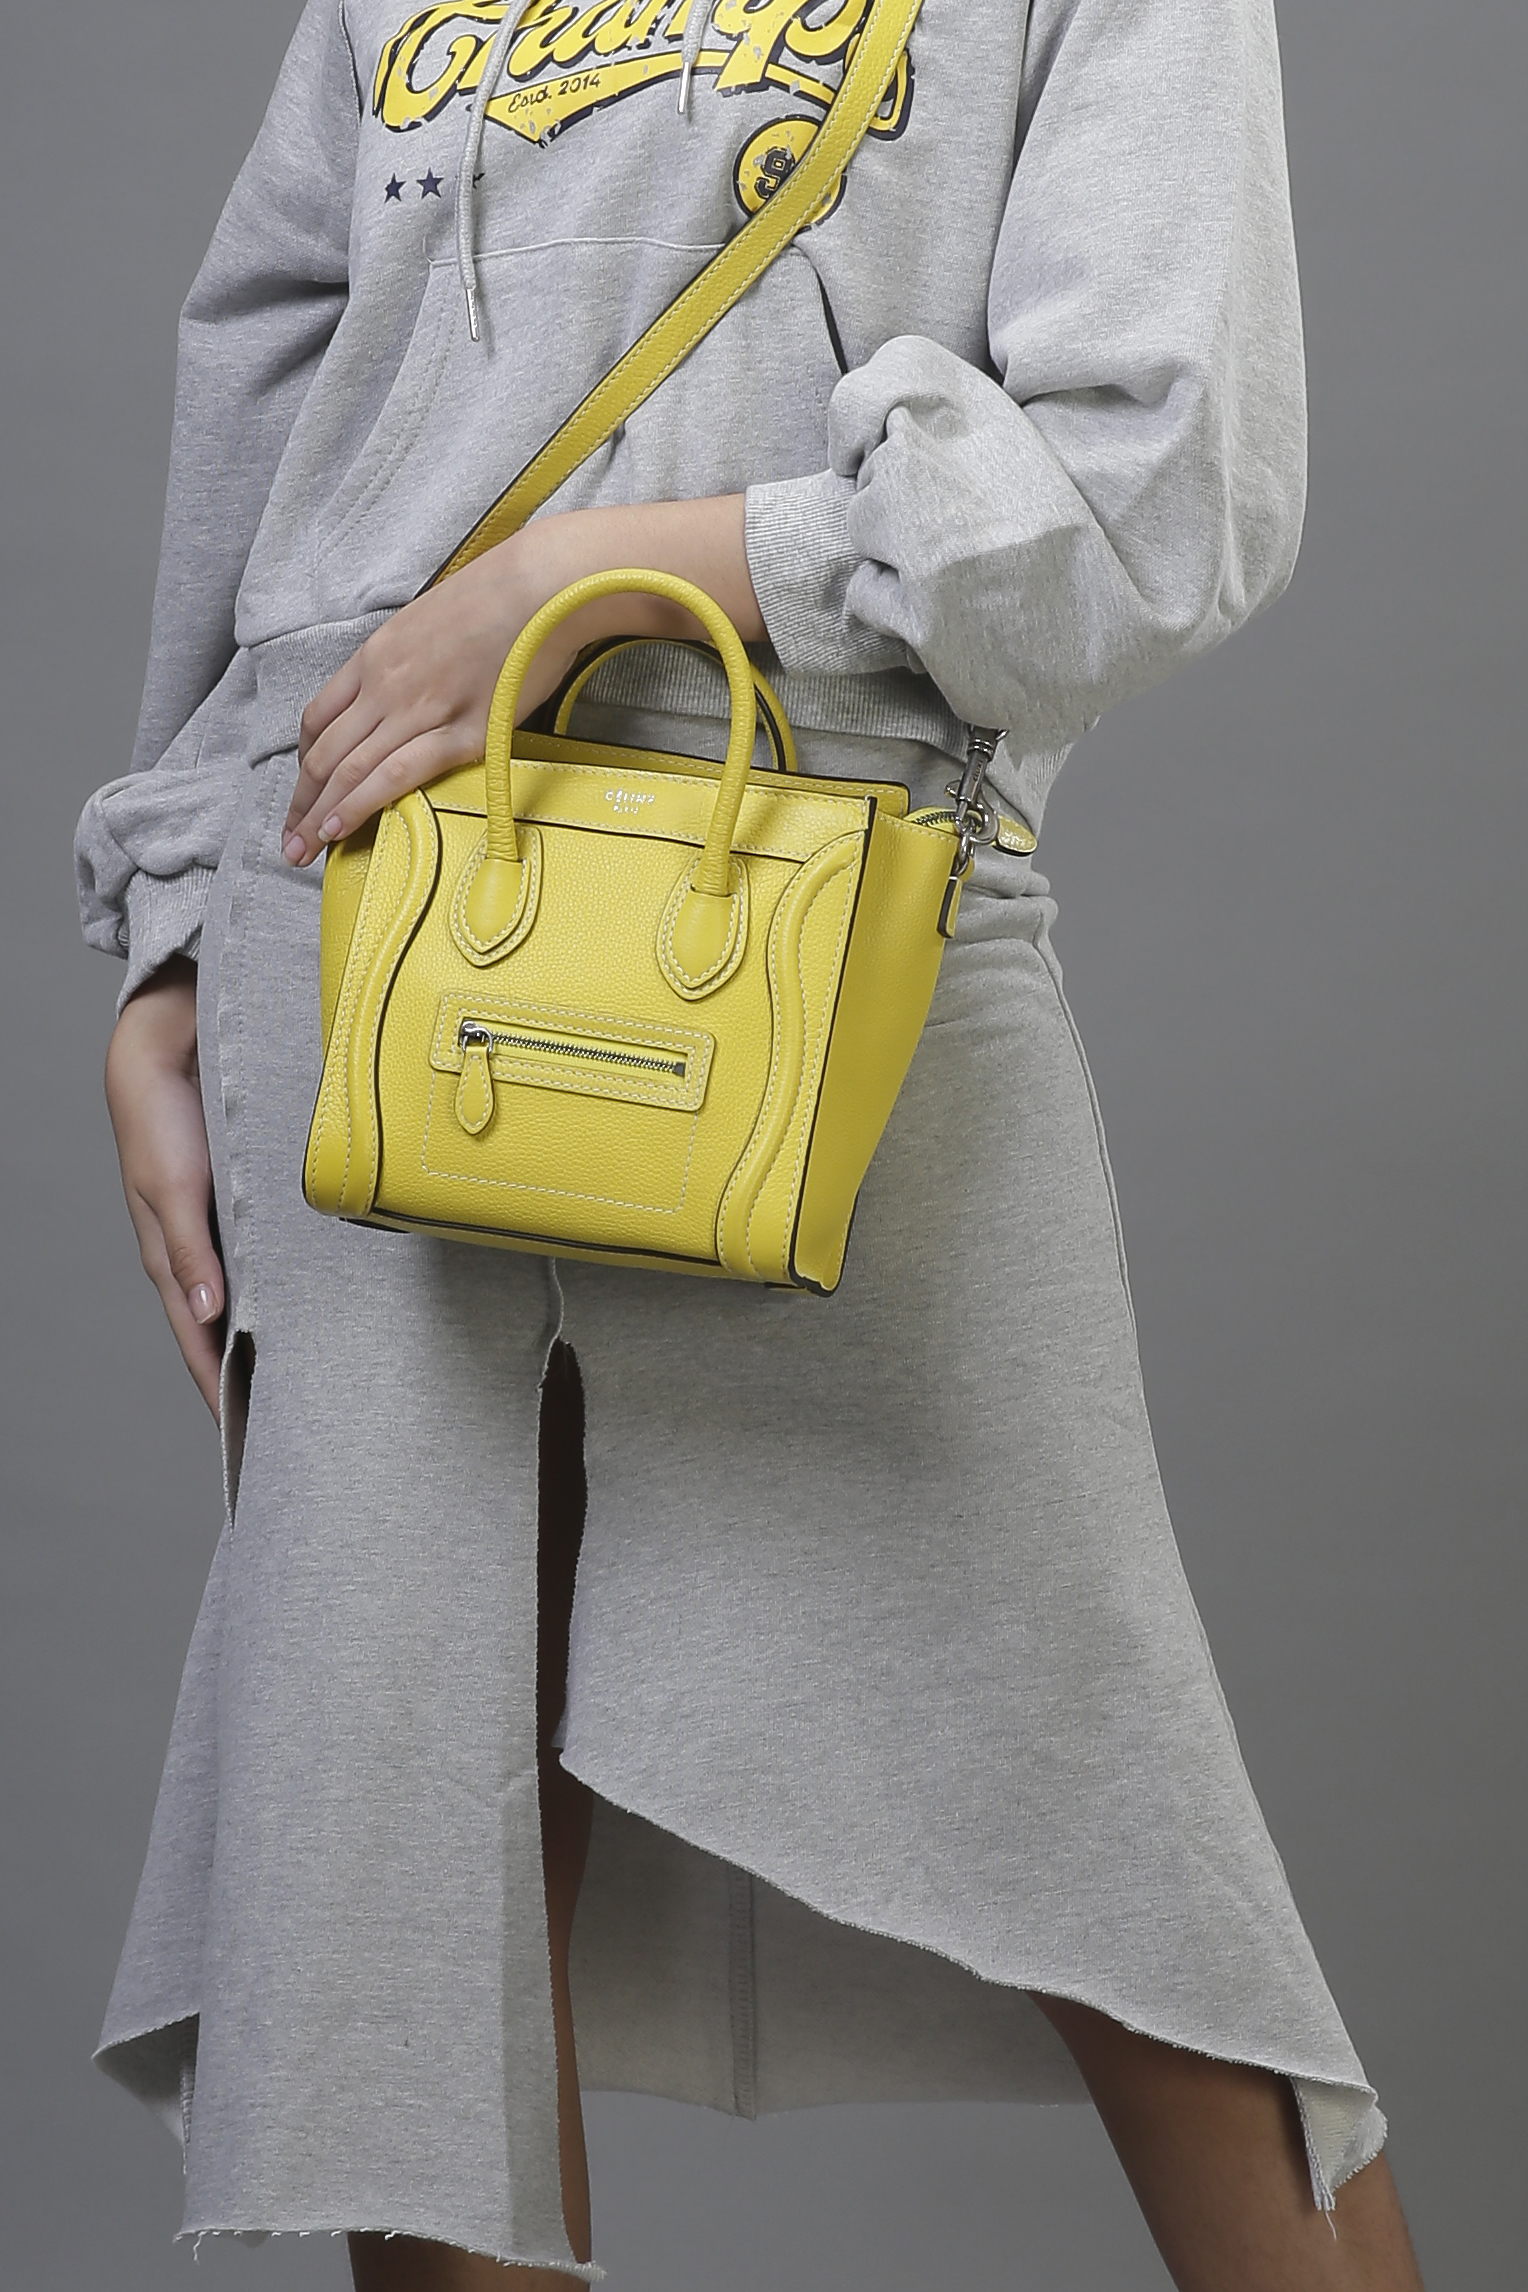 Celine Luggage Bag Micro Yellow | lupon.gov.ph